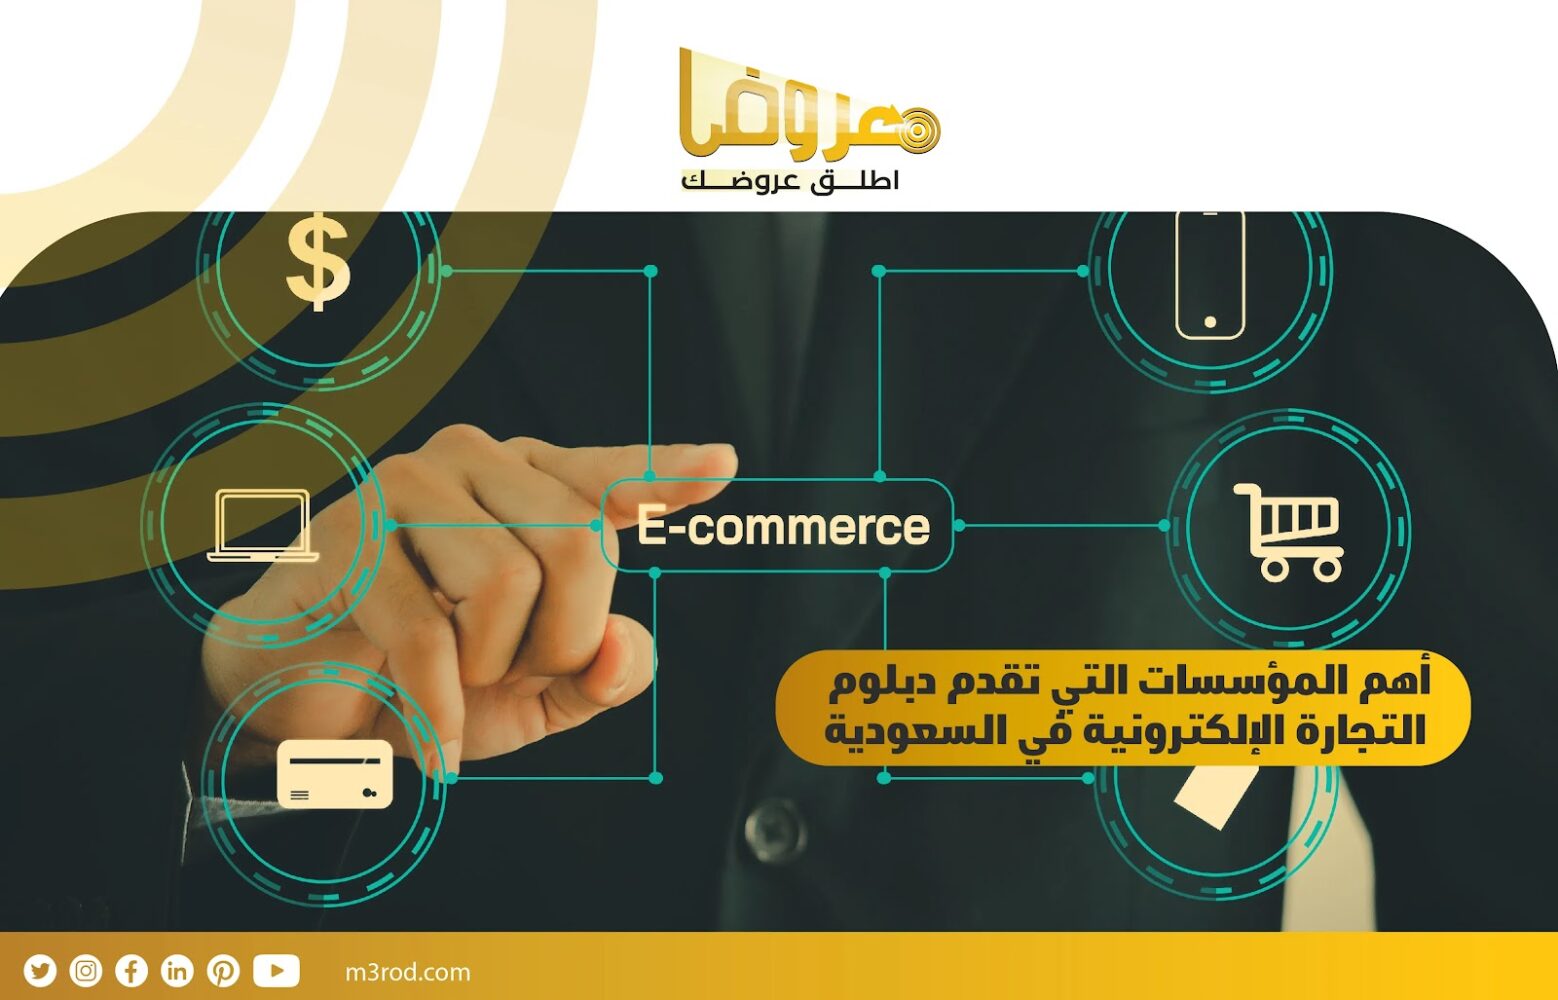 أهم المؤسسات التي تقدم دبلوم التجارة الإلكترونية في السعودية